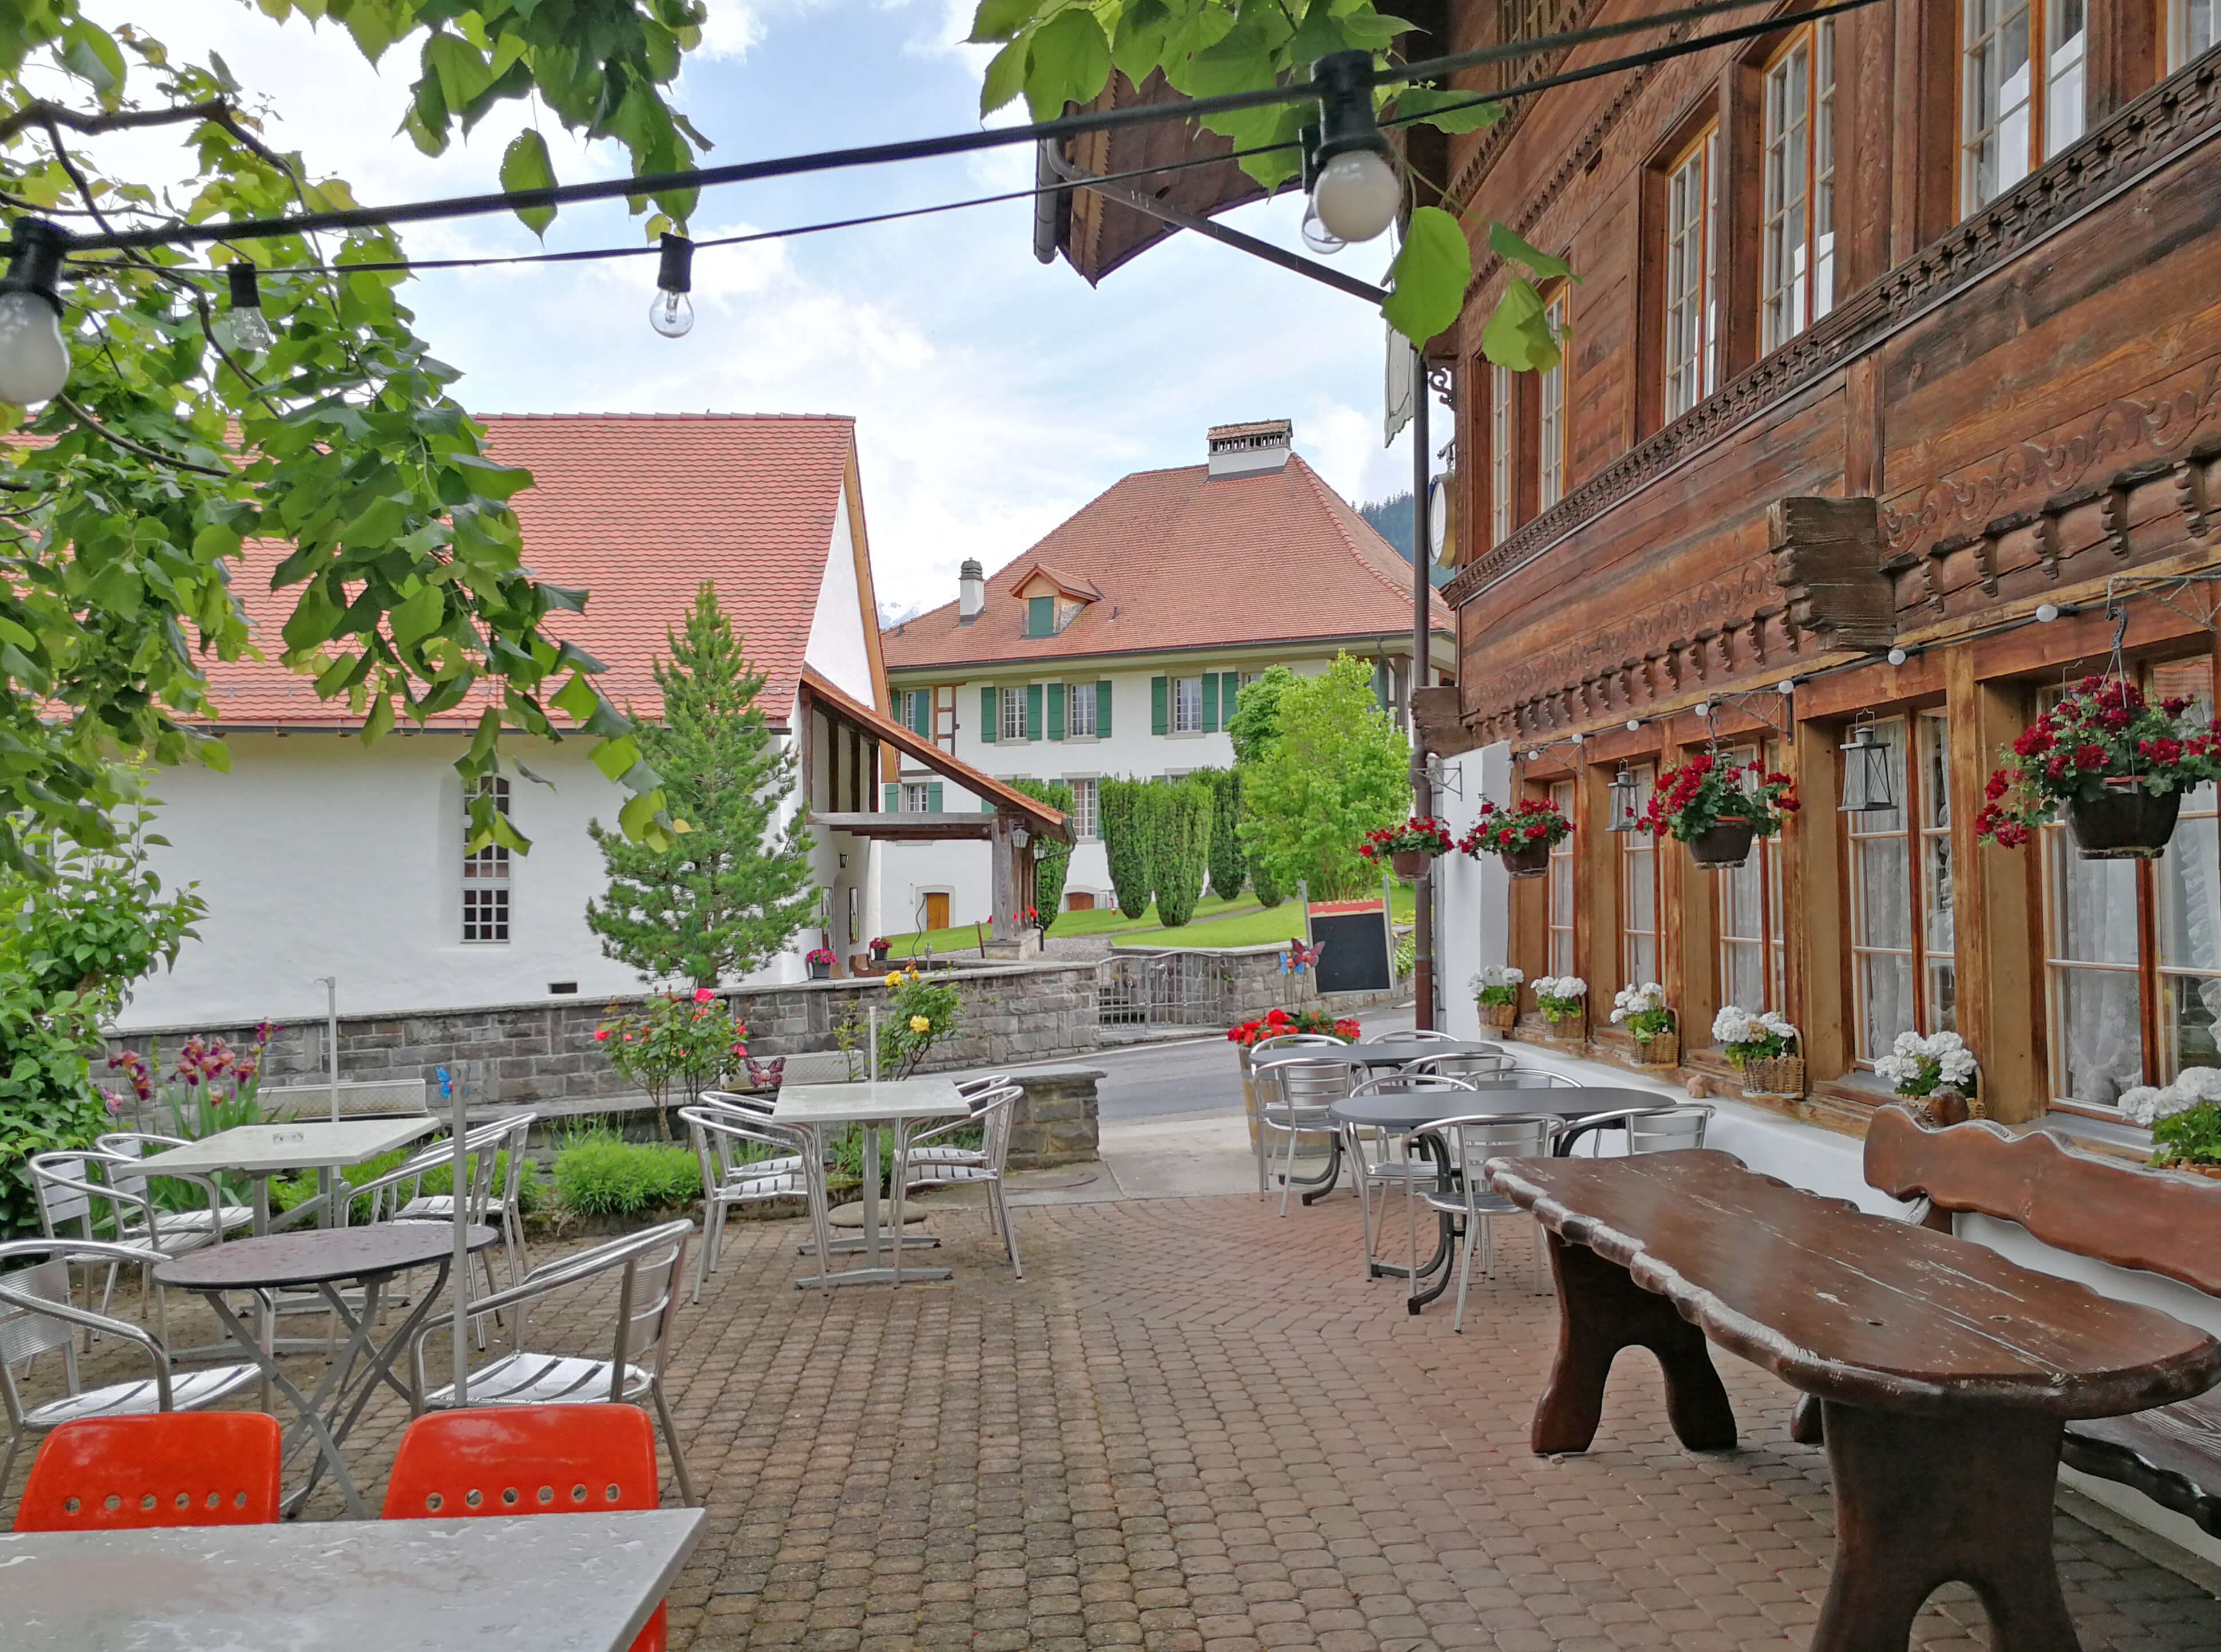 The terrace of the restaurant Hirschen Diemtigen 